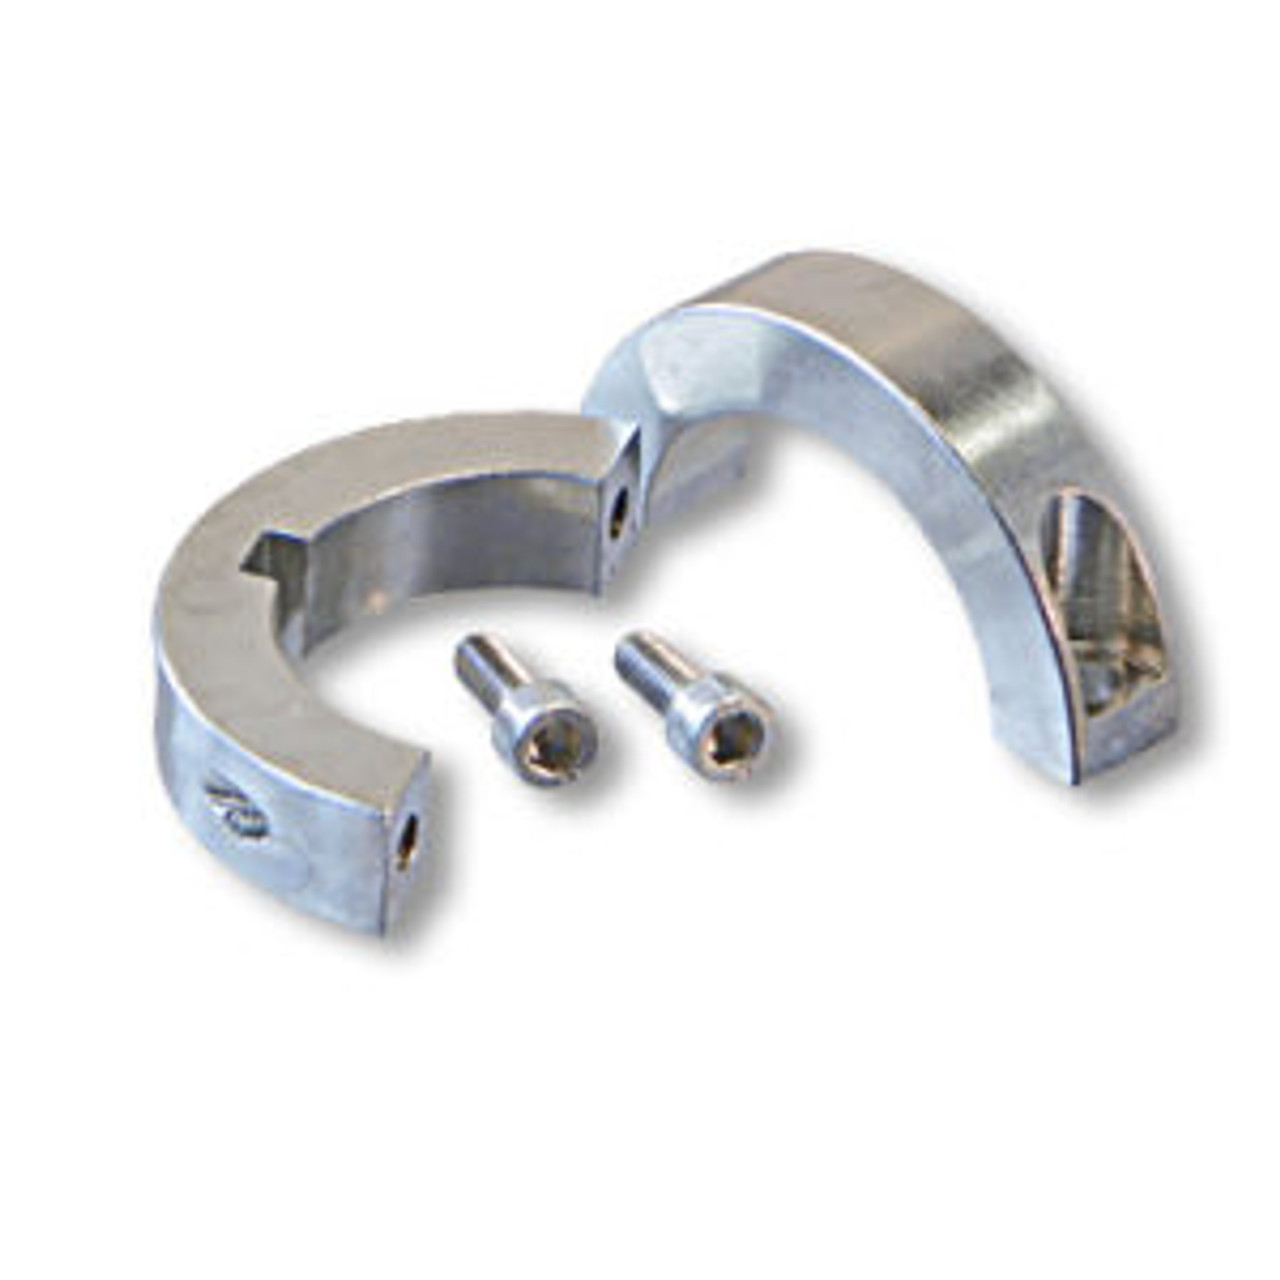 Split Billet Aluminum Collar 1-1/4" ID X 2" OD X 1/2" Wide, 1/4" Keyway